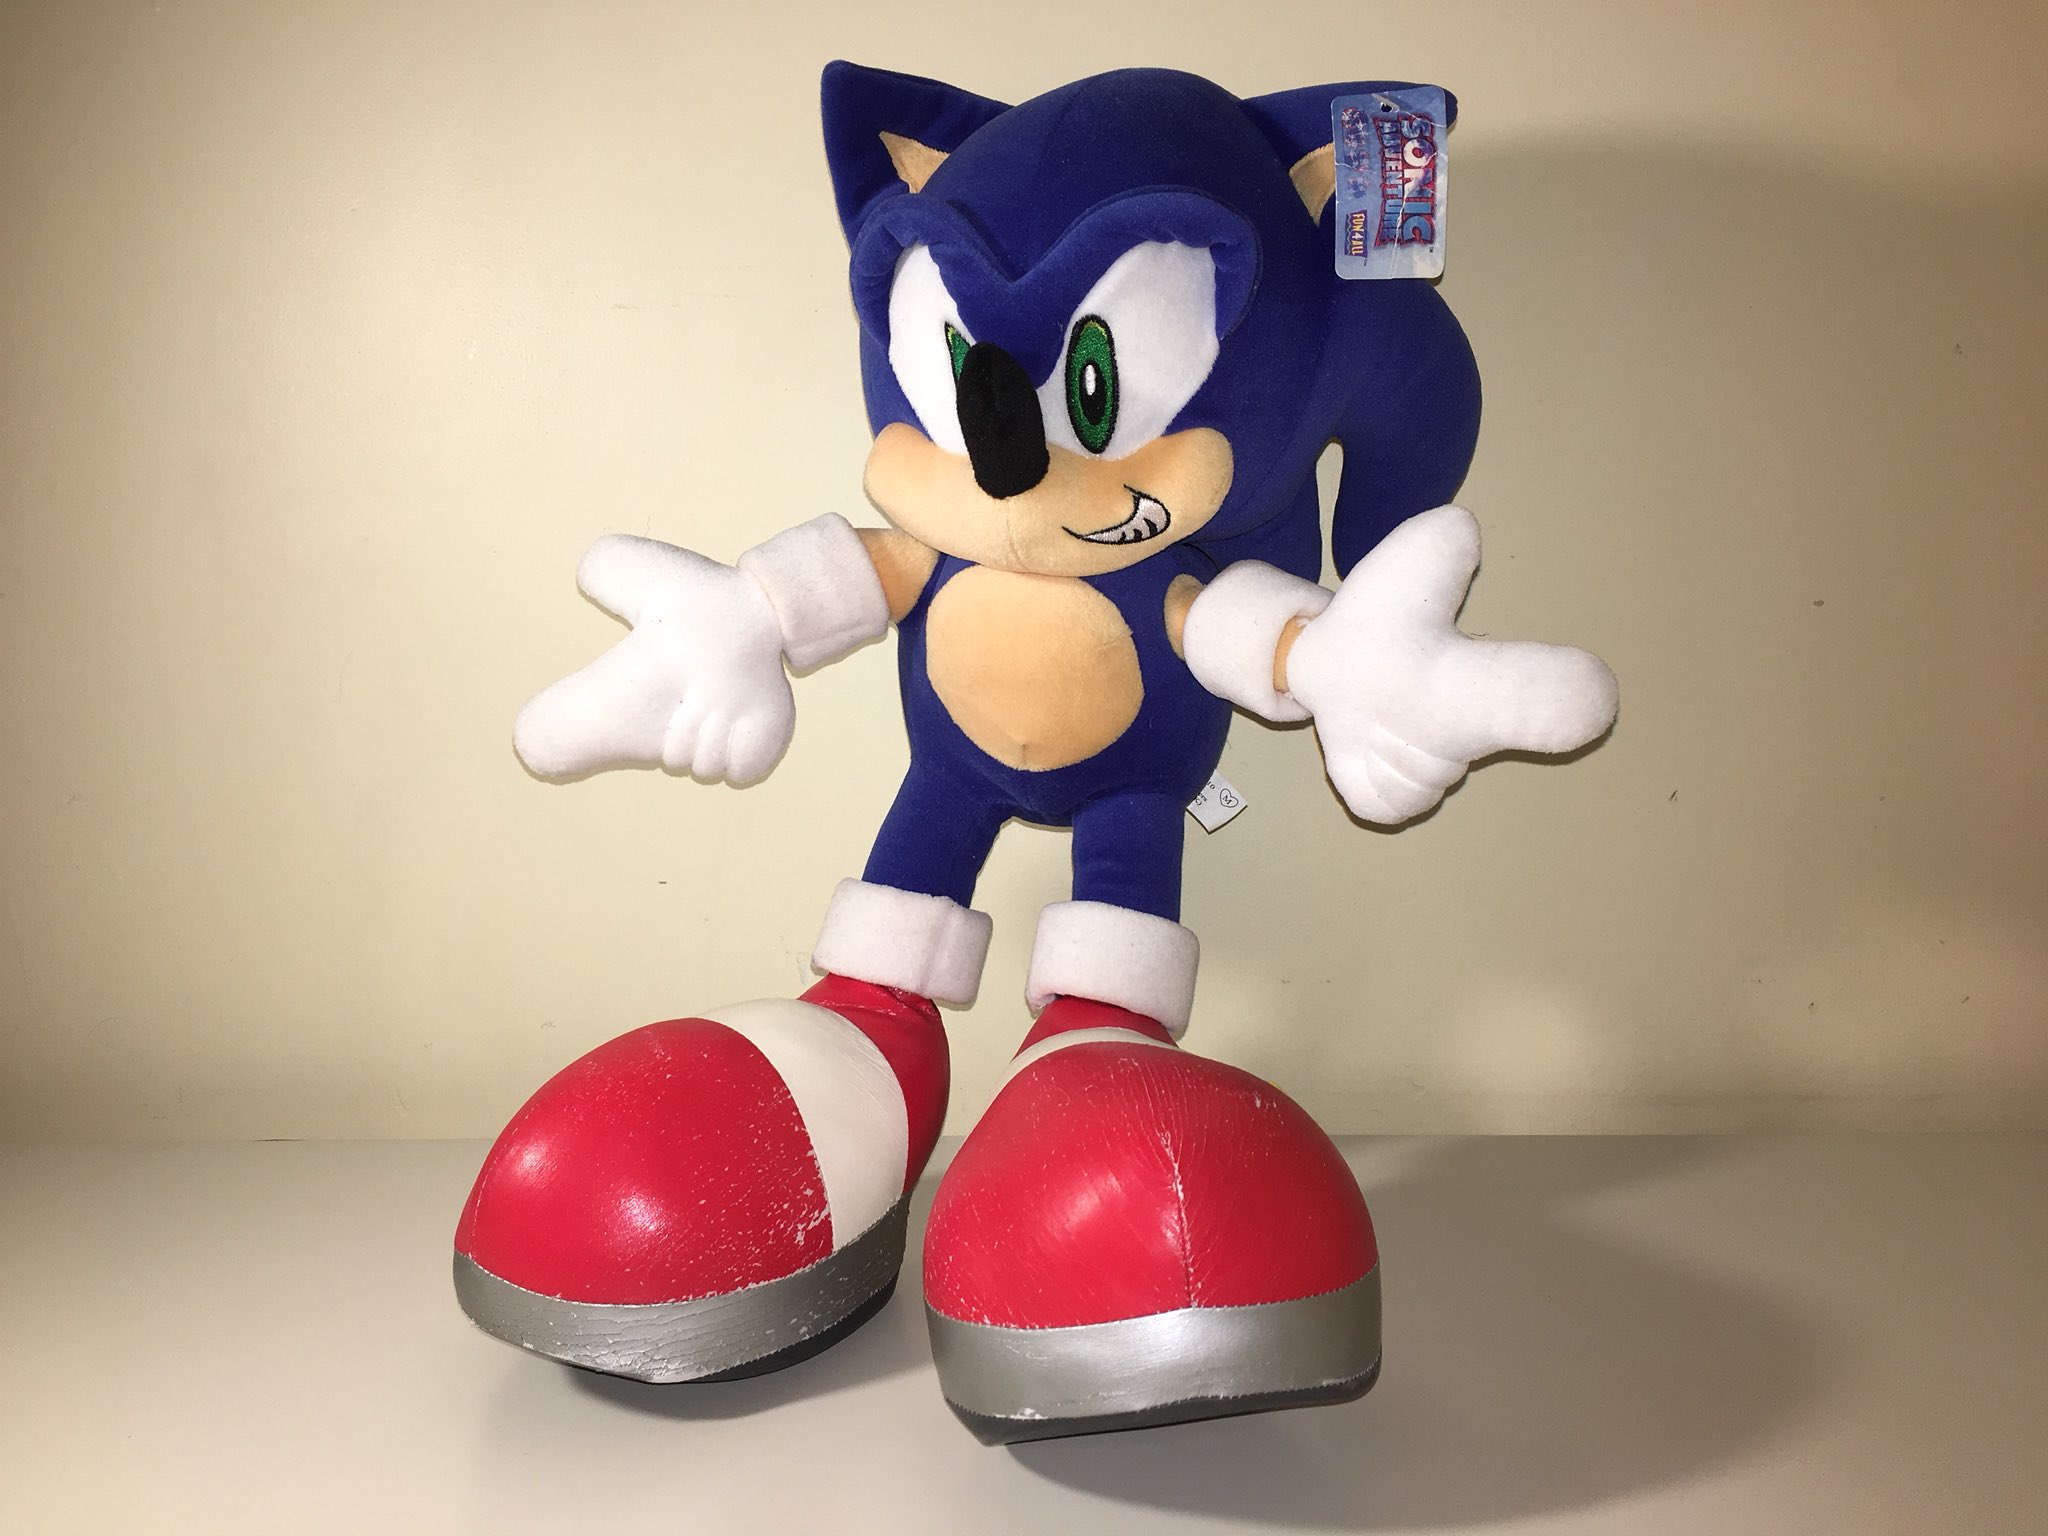 Sonic jp. Sonic Adventure 2 игрушки. Sonic Эдвенчер 2 Shoes Sonic. Sonic Plush Adventures. Sega Plush Sonic.